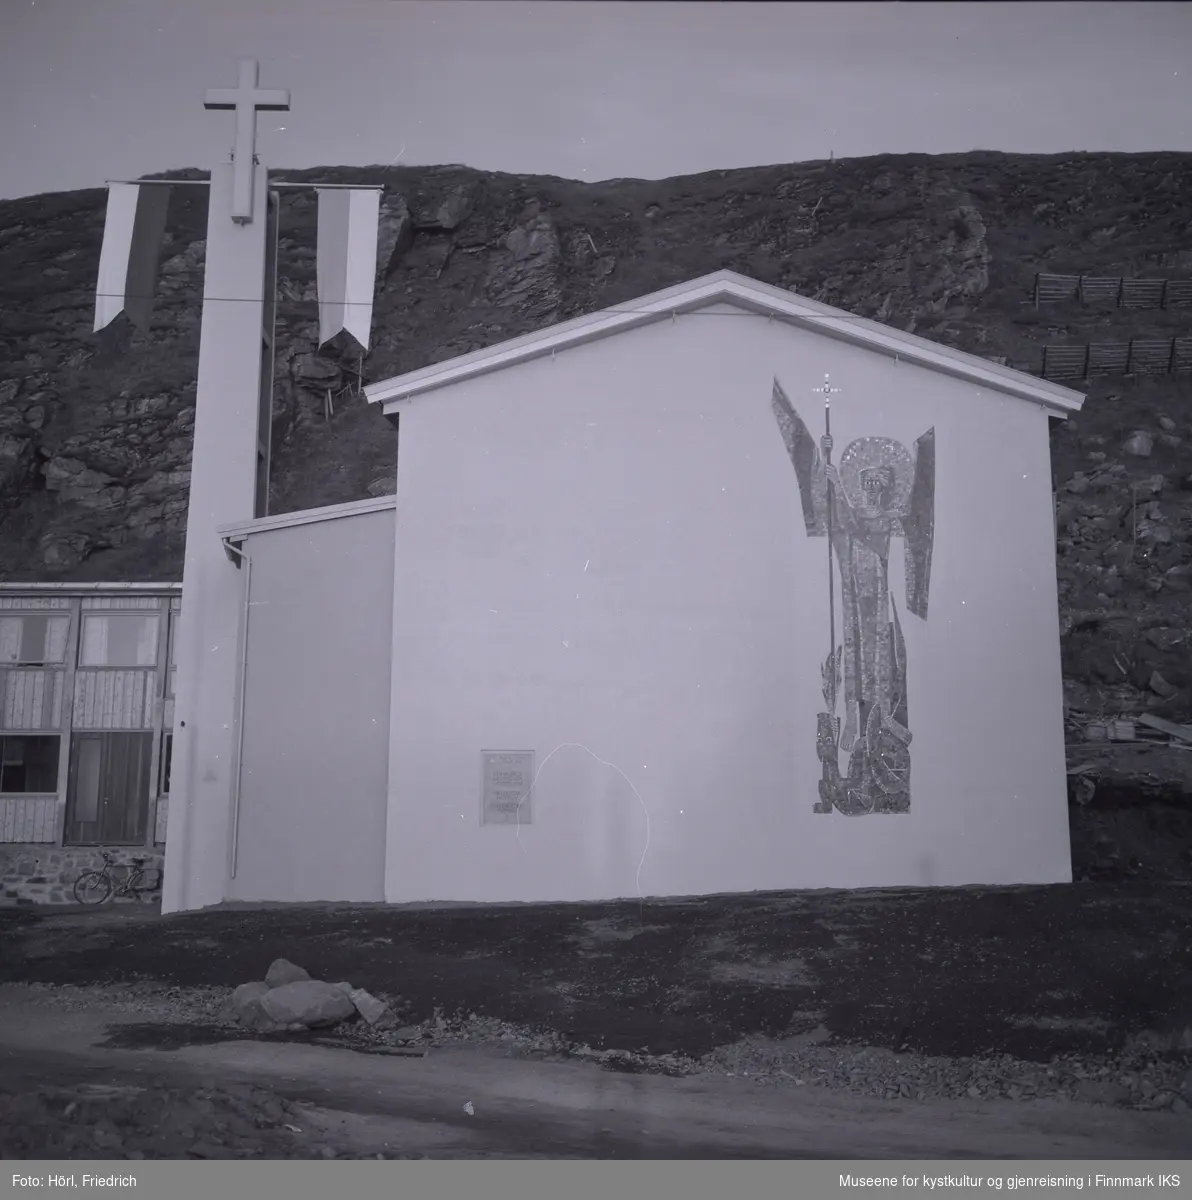 Ved klokketårnet til den katolske kirka St. Mikael i Hammerfest er det montert to stenger med vimpler. Det antas at dette ble gjort i anledning vigslingen den 3. august 1958. 
Kirkens vegg mot gata er dekorert med en stor mosaikk av St. Mikael, skapt av den tyske billedkunstneren Karl Manninger. Ved kirkens sidefløy til venstre er en sykkel lent mot veggen. Bak kirkebygget ser man Salenfjellet.